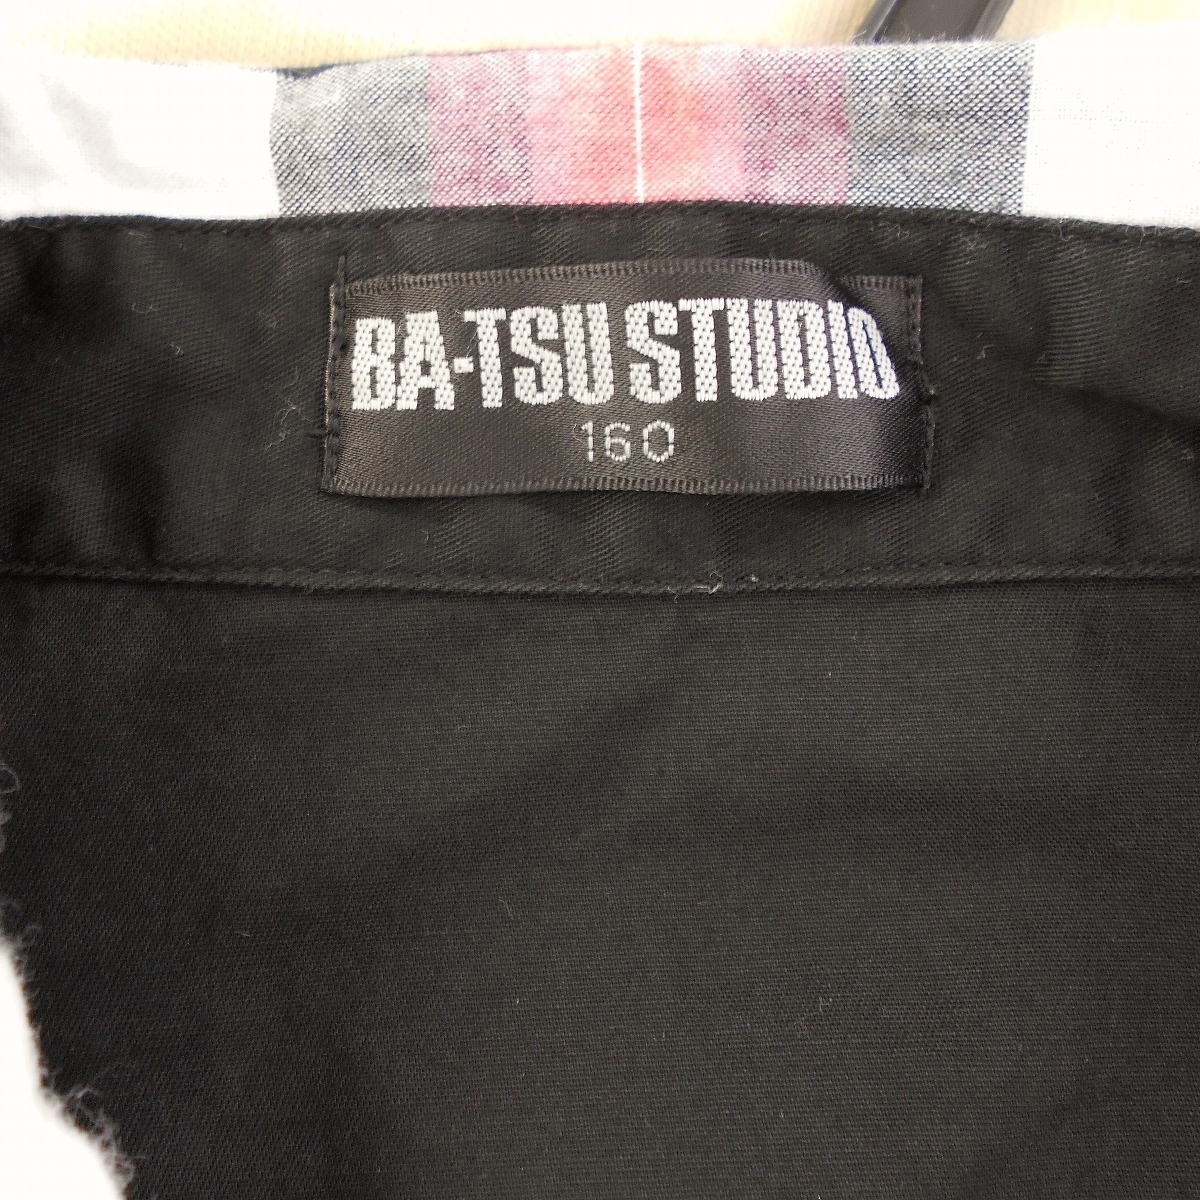  Ba-Tsu Studio BA-TSU STUDIO Kids Junior мужчина 160cm рубашка с длинным рукавом красный чёрный белый проверка Skull . рукав roll выше tops 